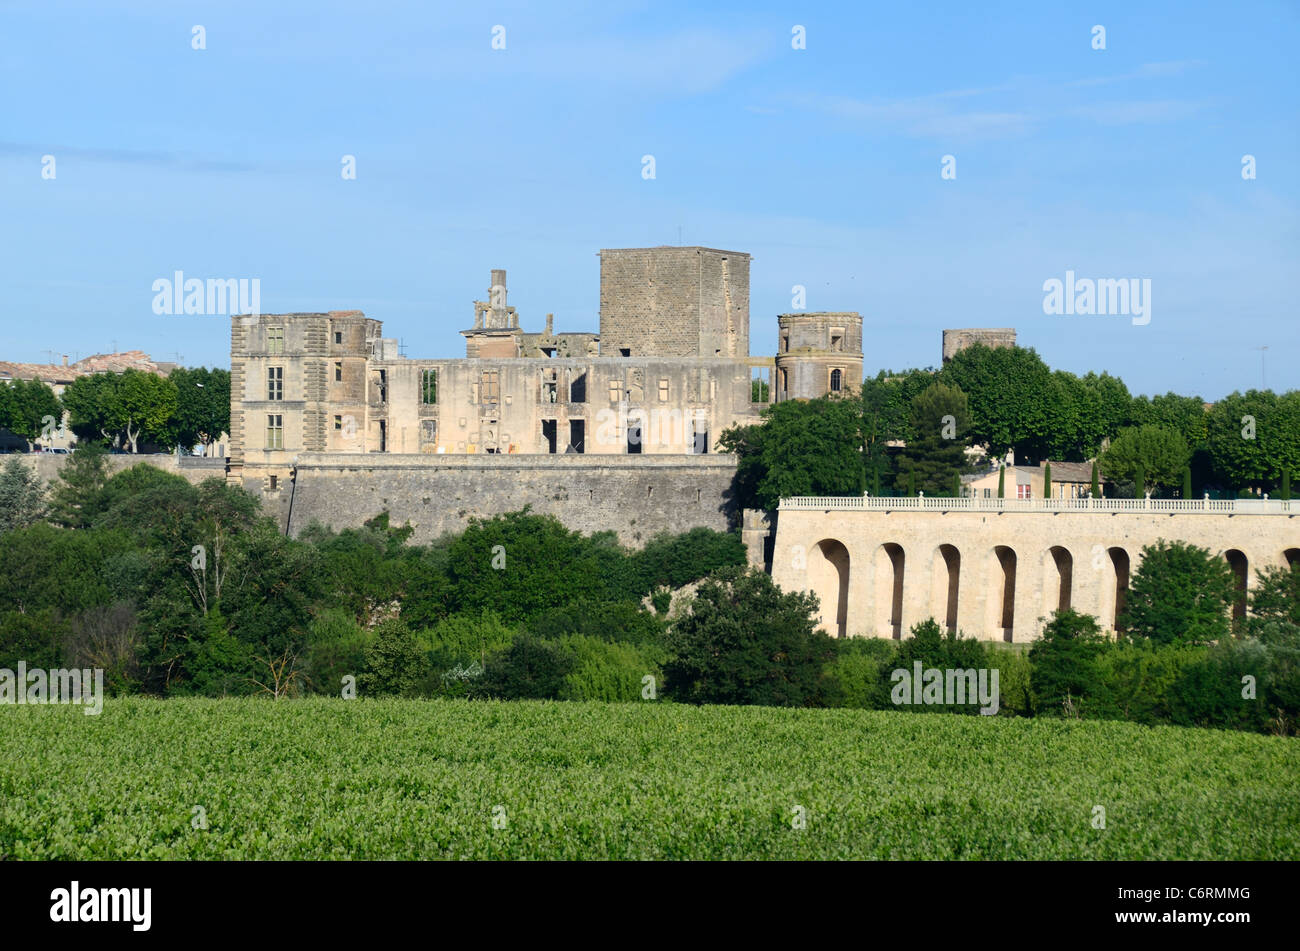 Château de la Tour d'Aigues en ruines de la Renaissance, Luberon, Provence, France Banque D'Images